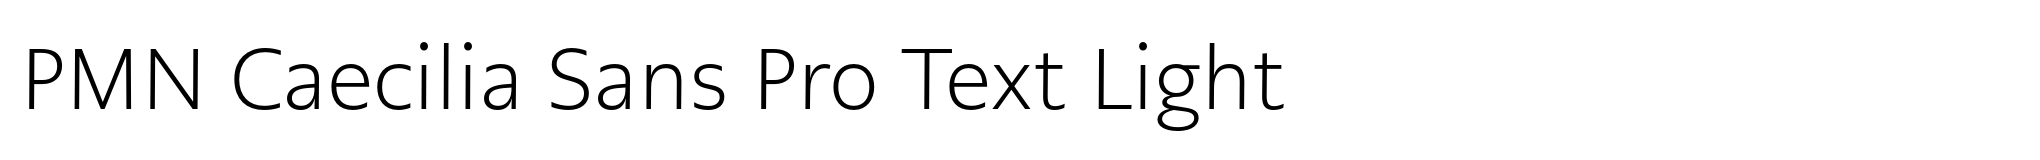 PMN Caecilia Sans Pro Text Light image